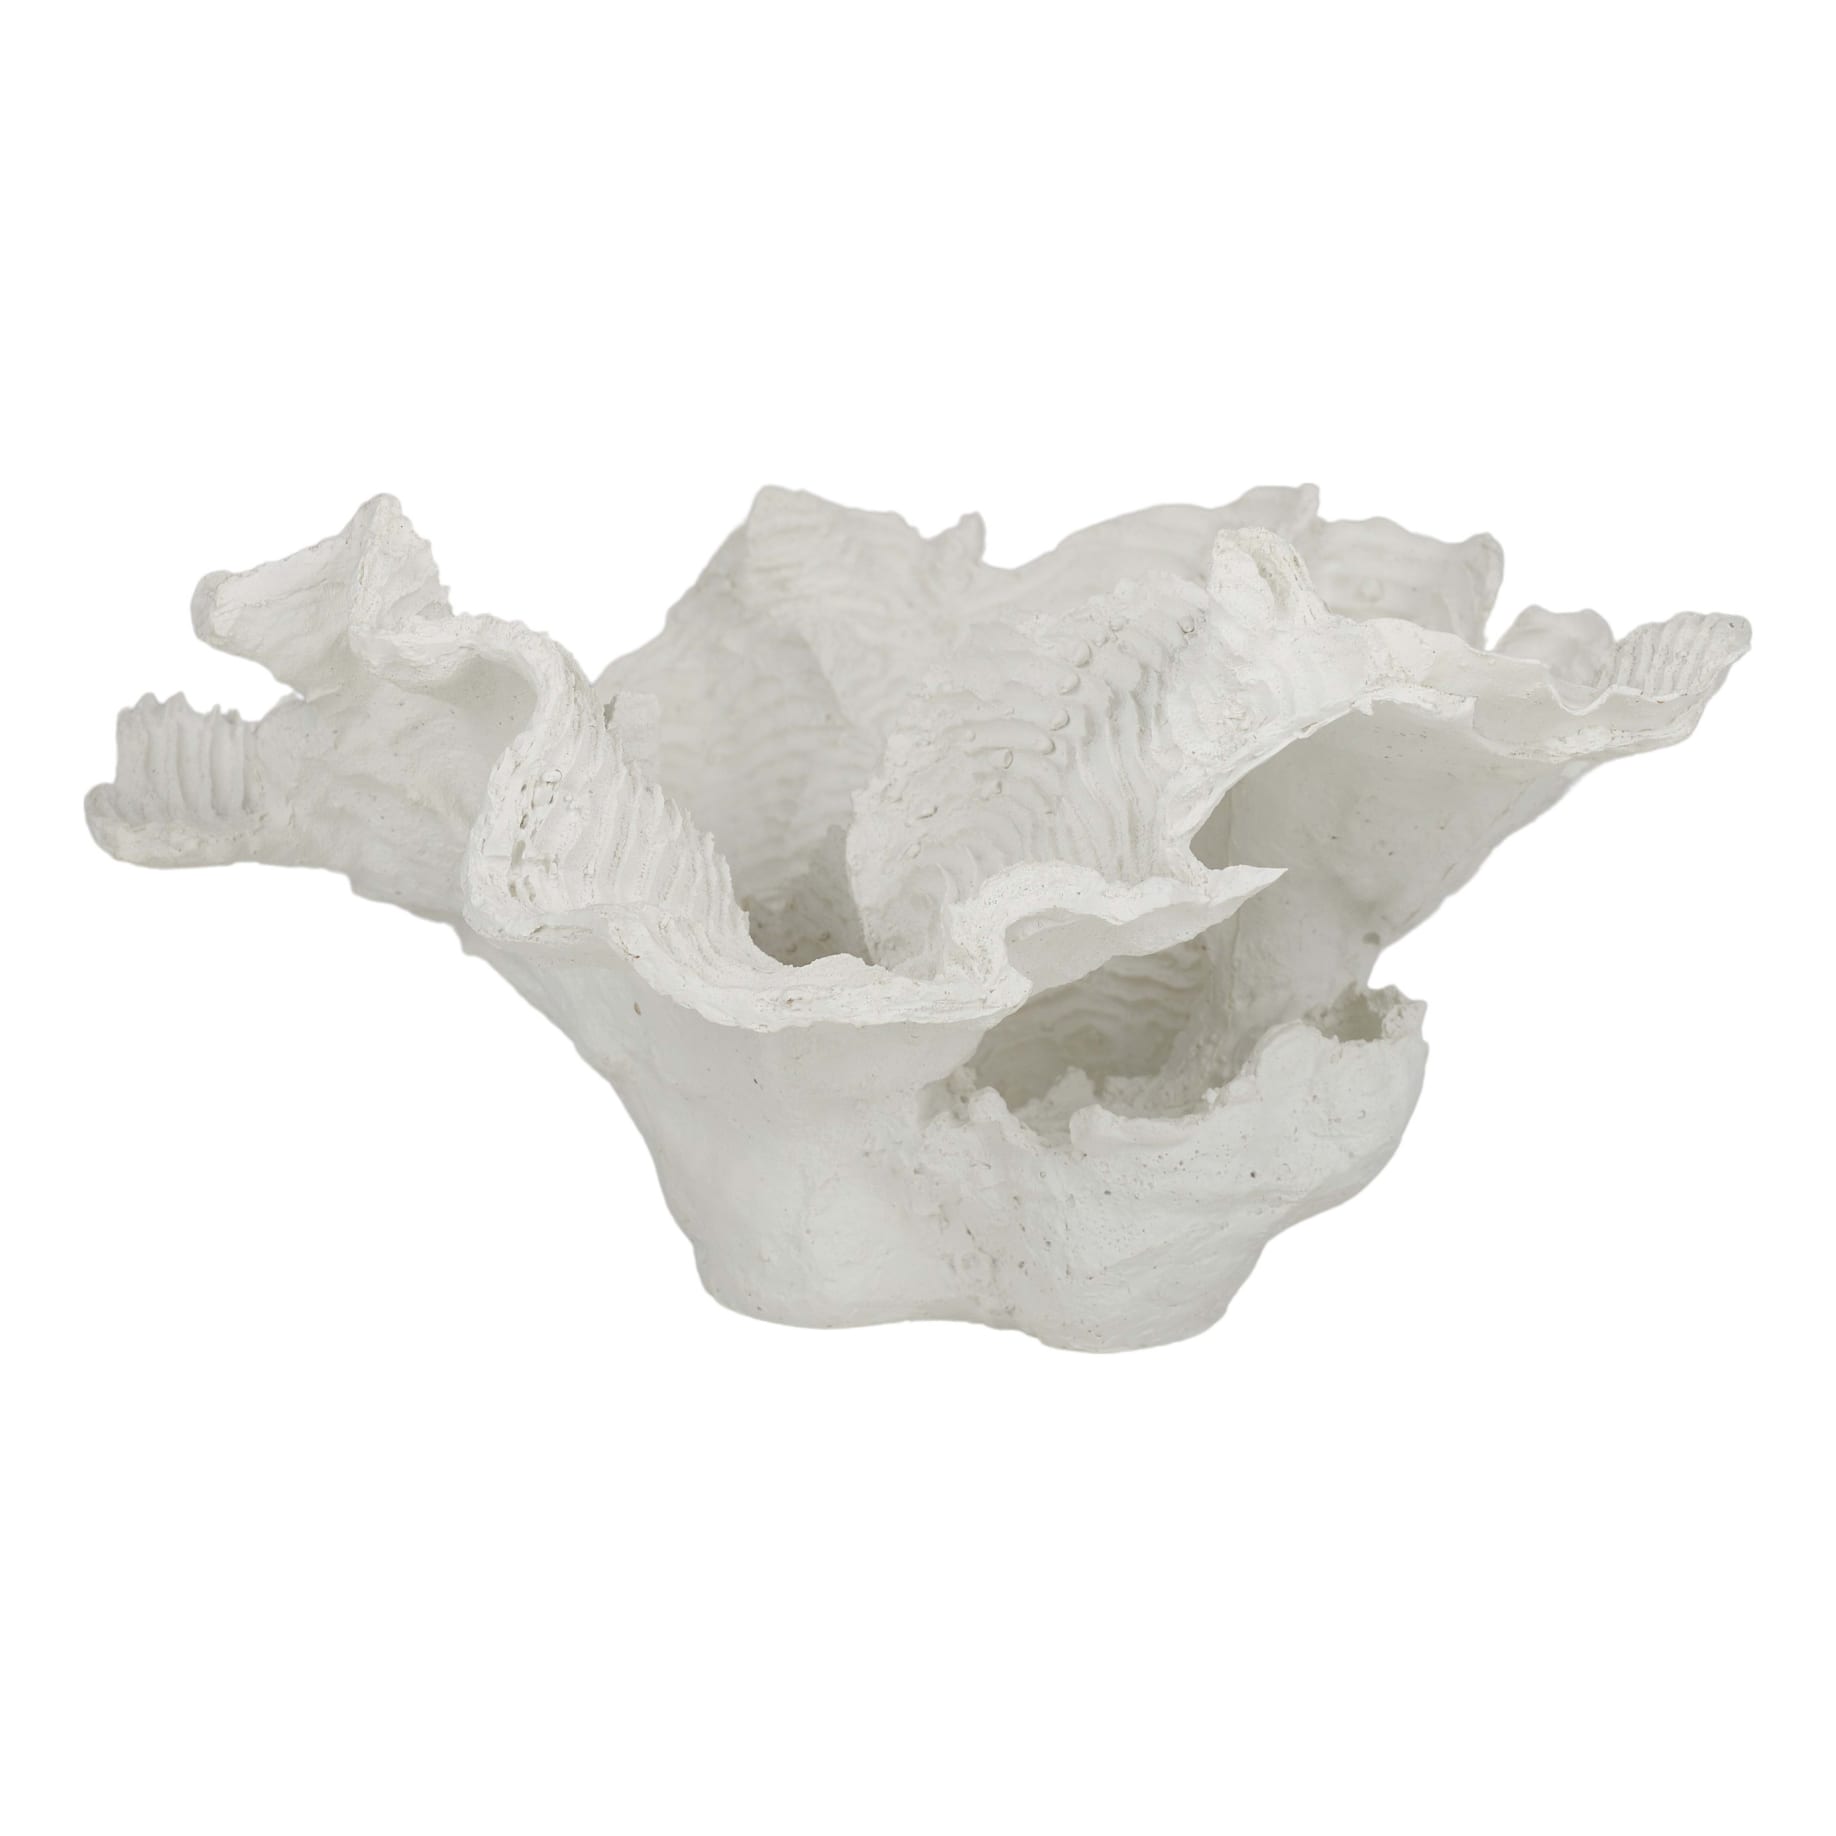 Foliose Coral Sculpture 30x15cm in White